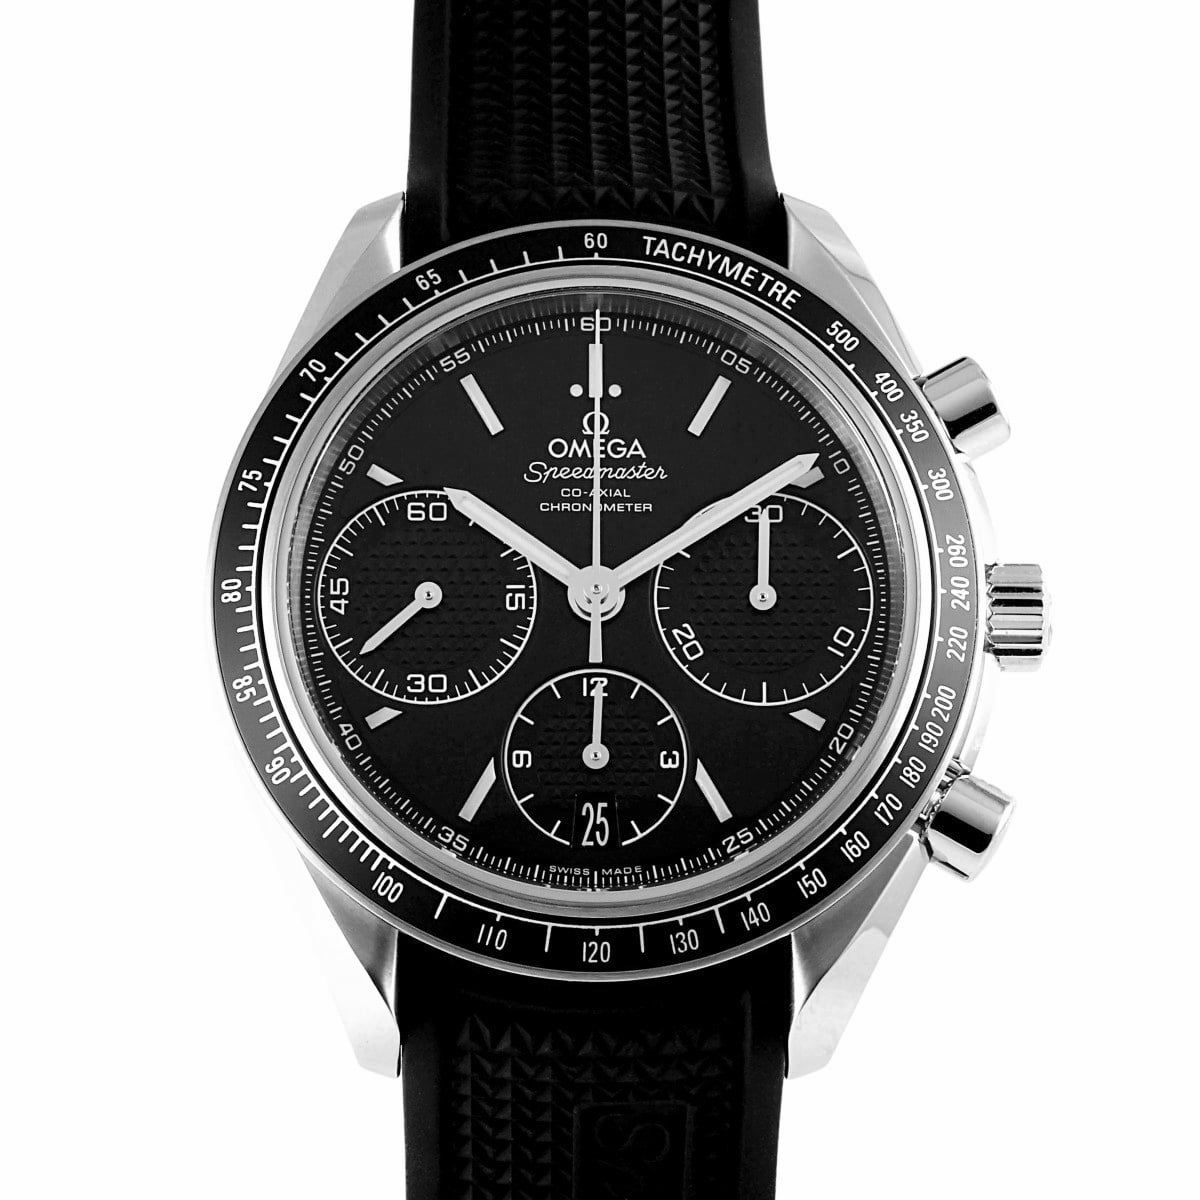 歐米茄 OMEGA 超霸賽車同軸計時碼錶 40 毫米 326.32.40.50.01.001 黑色錶盤全新手錶男士